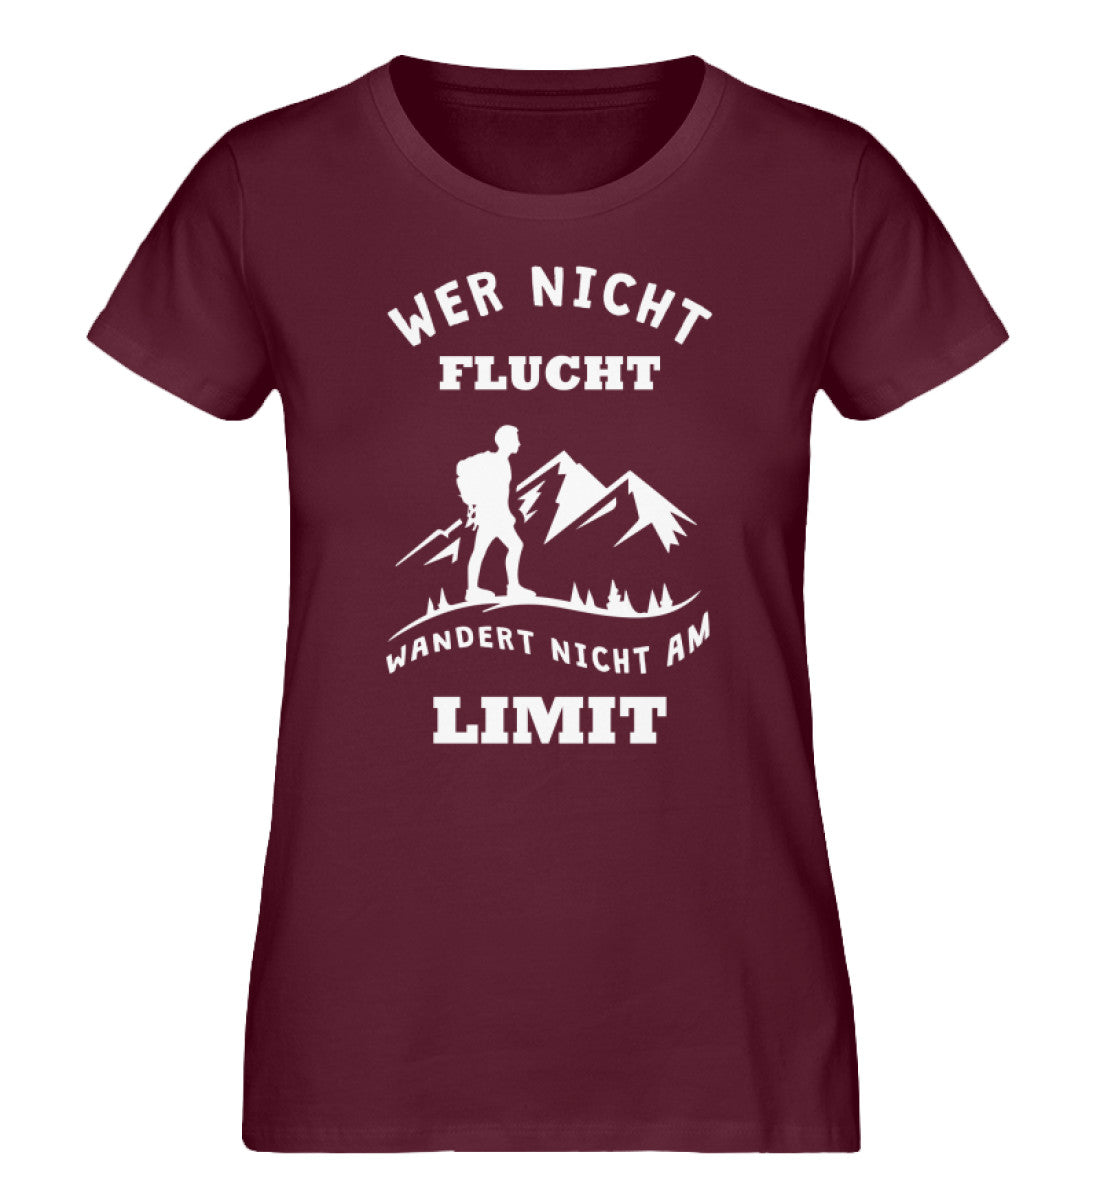 Wer nicht flucht wandert nicht am Limit - Damen Organic T-Shirt berge Weinrot